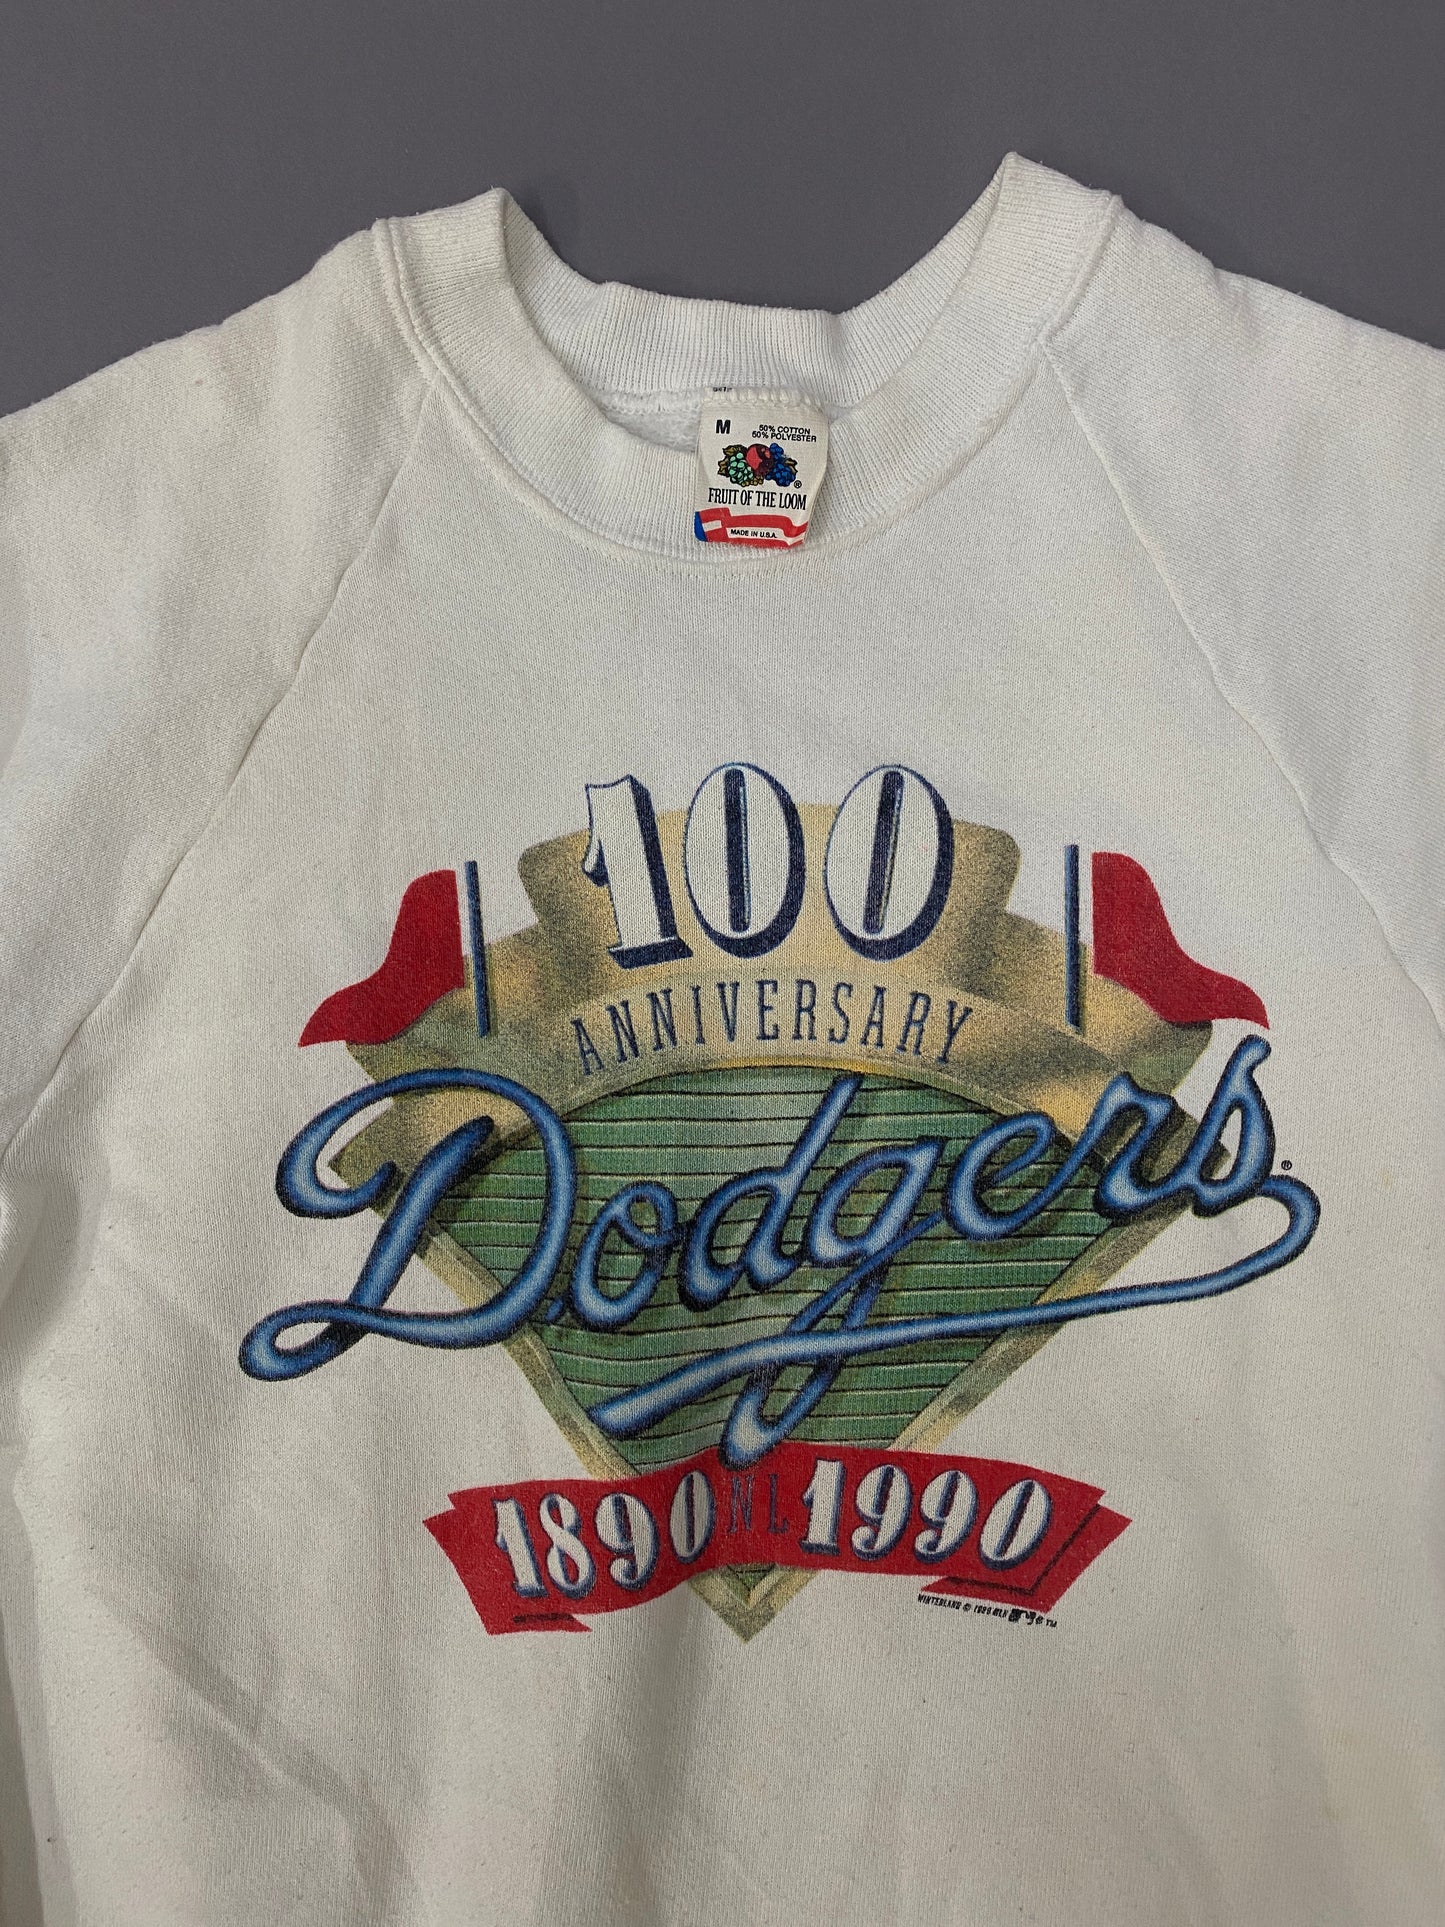 Dodgers 1990 sweatshirt